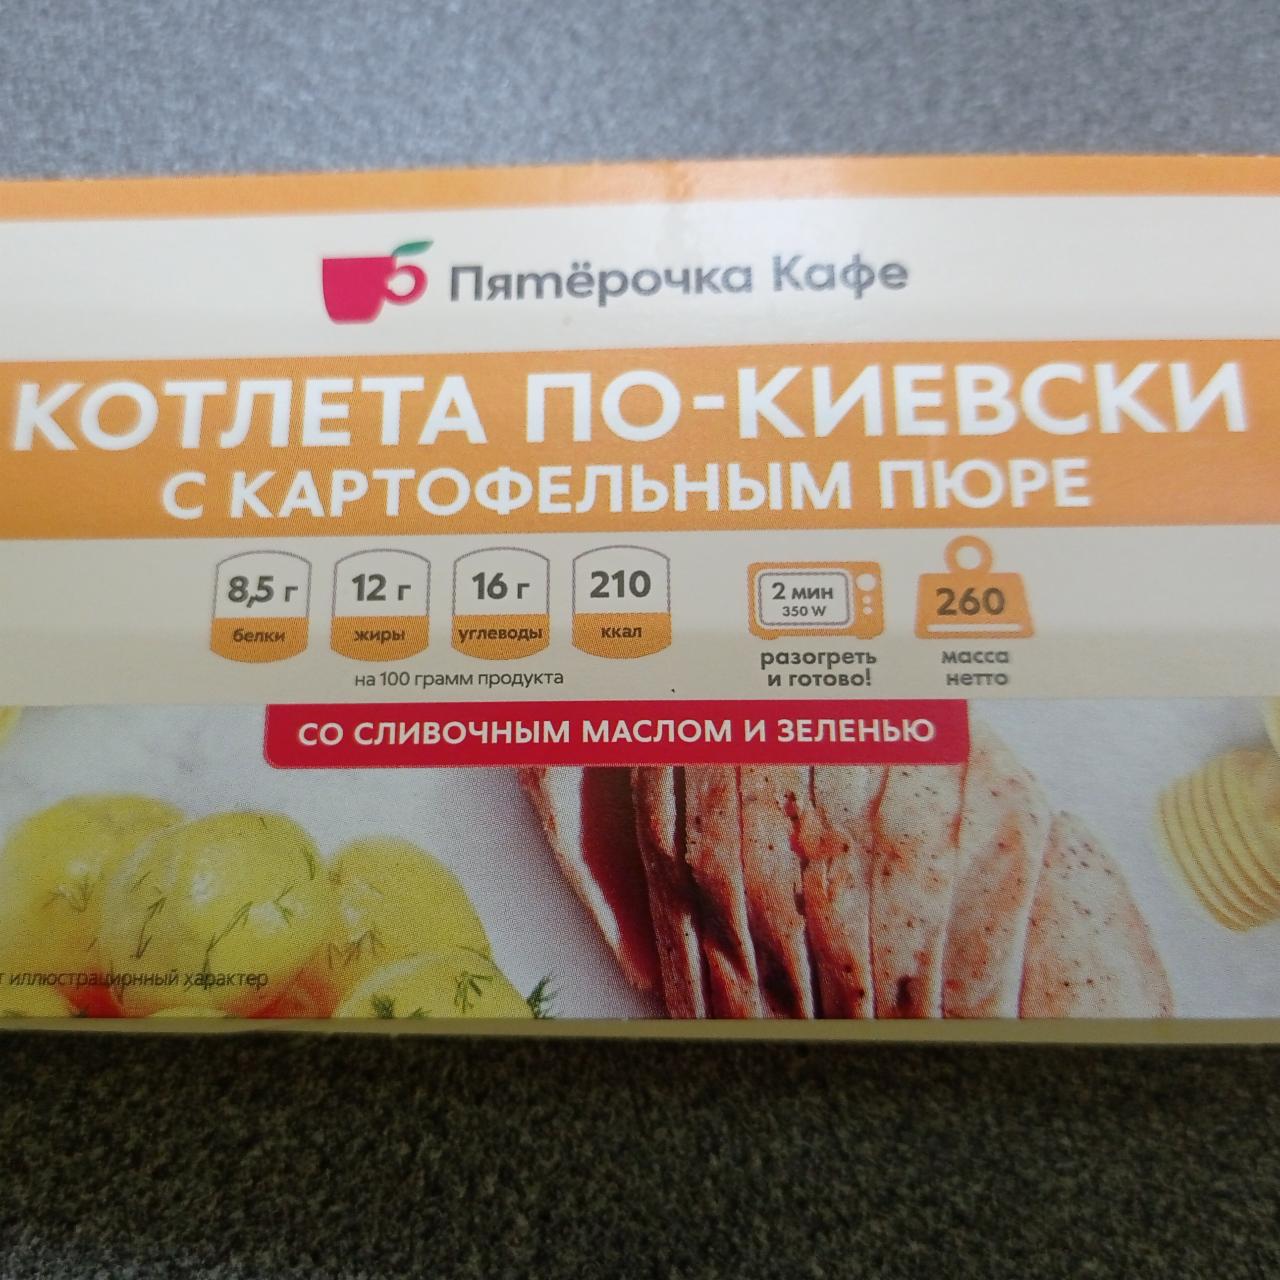 Фото - котлета по-киевски с картофельным пюре Пятерочка кафе